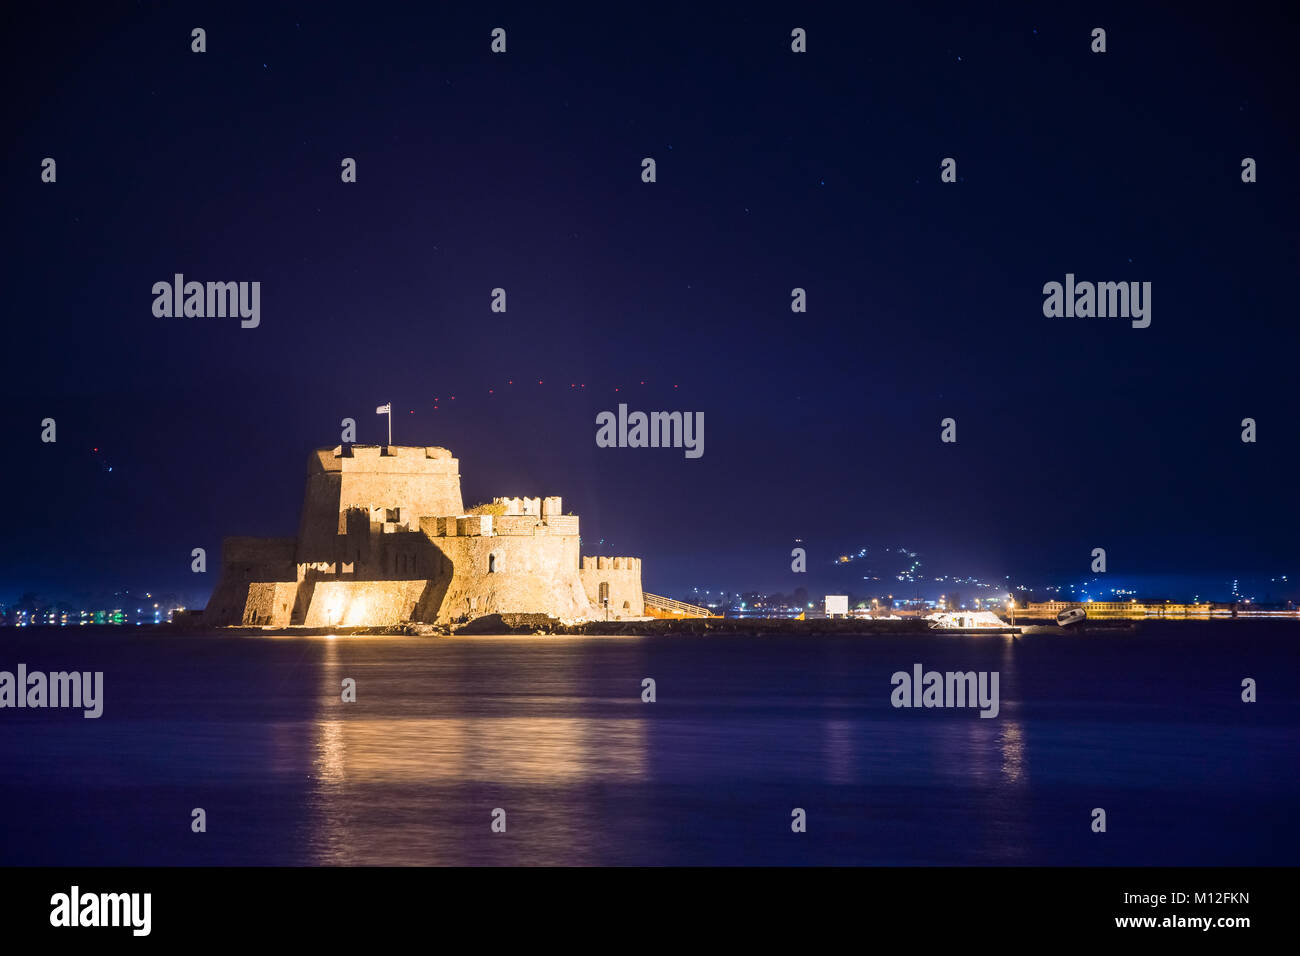 Allumé en vieille ville de Nauplie en Grèce avec des toits, petit port, le château de bourtzi, forteresse de Palamède de nuit. Banque D'Images